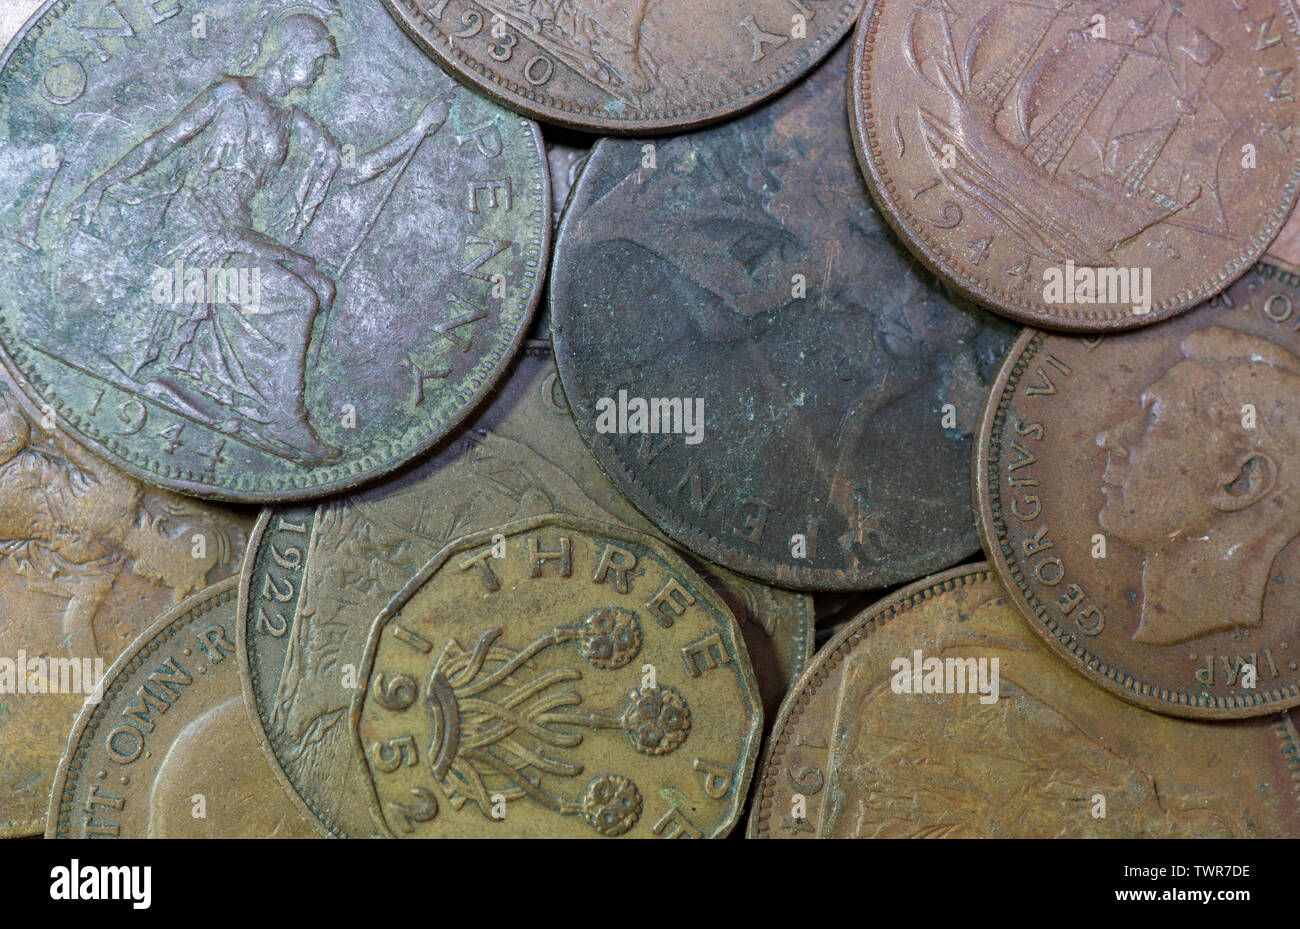 Antiguas monedas británicas, un centavo monedas. threepenny bit,medio penique y sixpence. Islas Británicas. Foto de stock